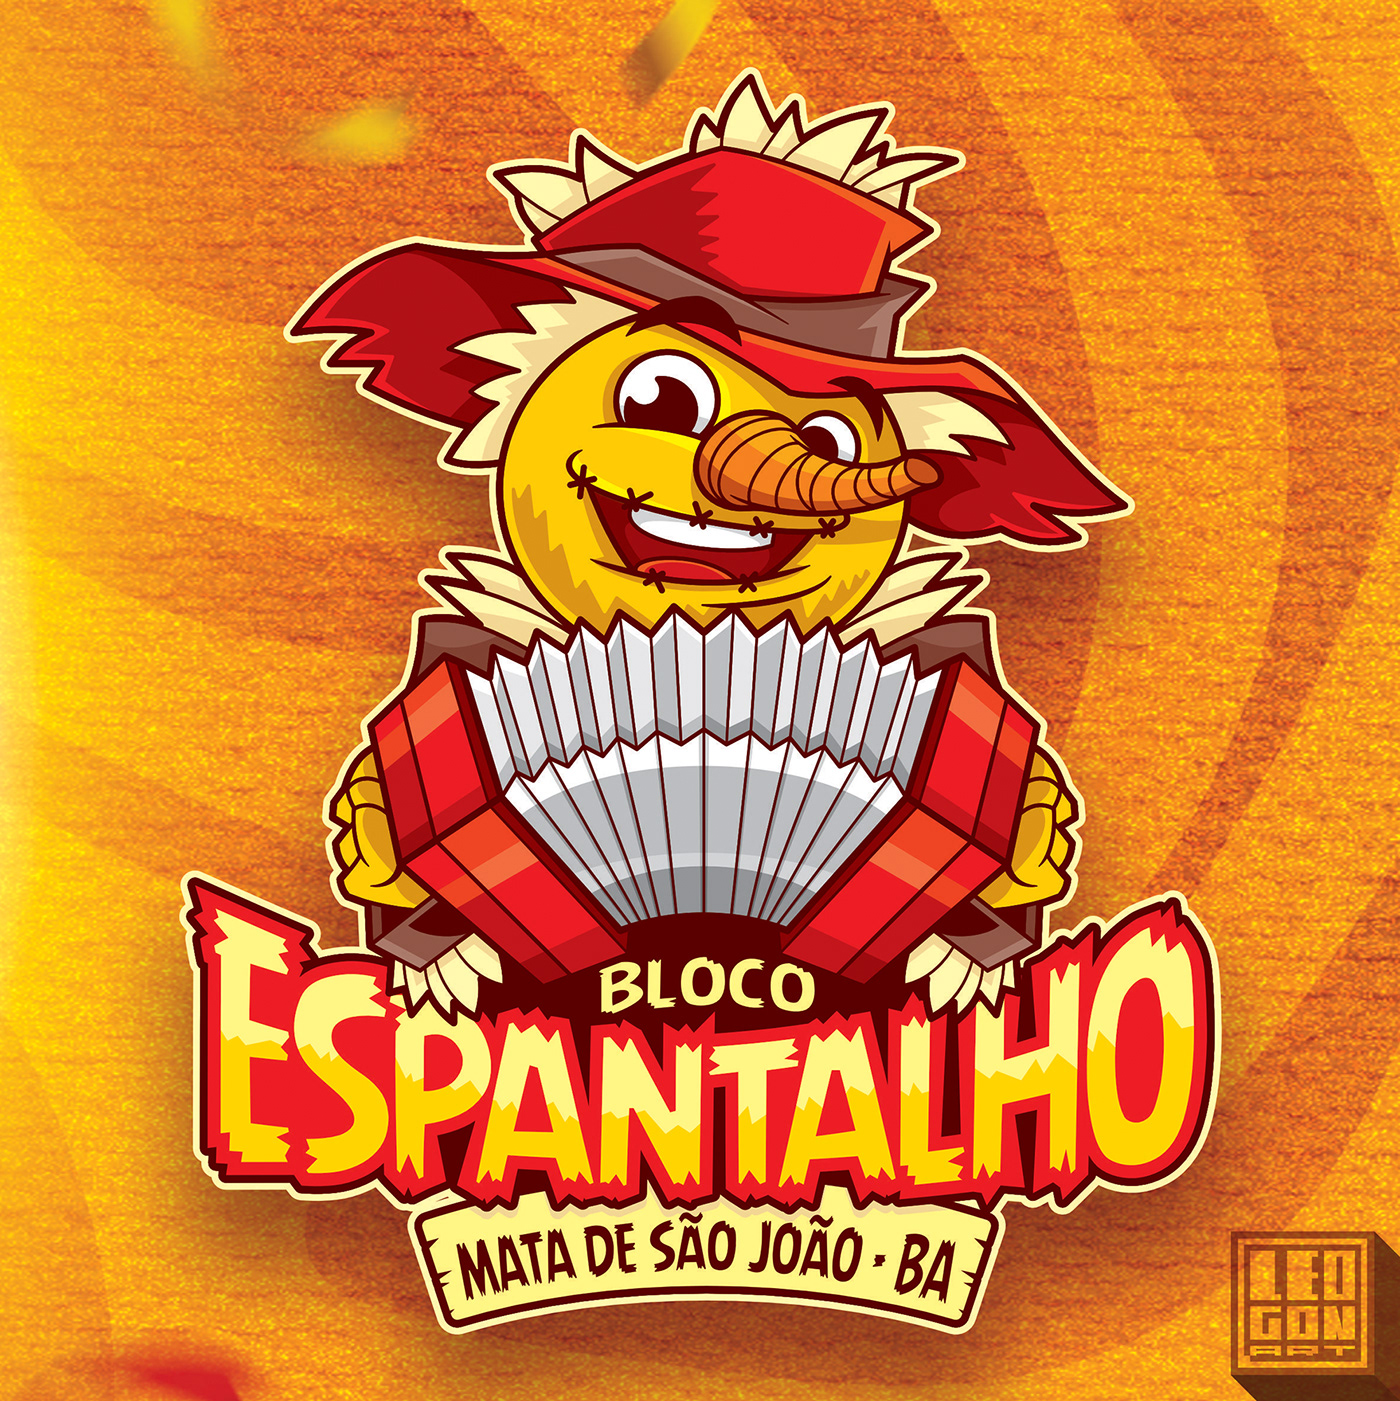 Carnaval bloco espantalho logo Logotipo atletica escudo alegria